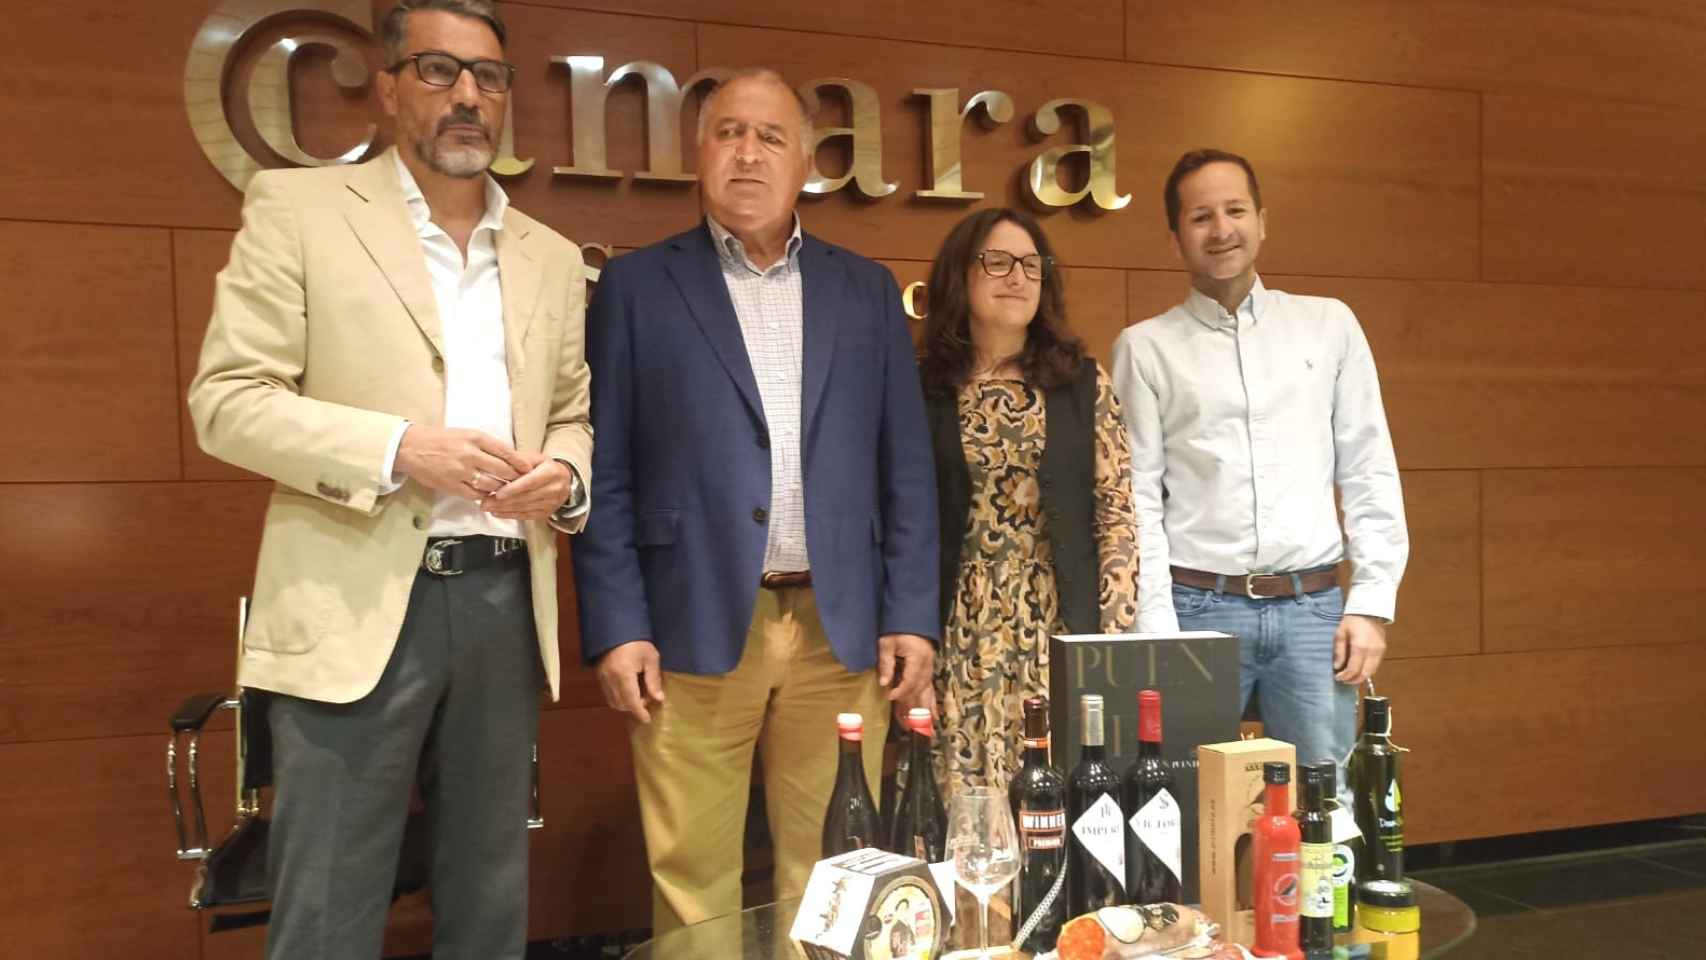 El diputado Ángel Luis Peralvo, el presidente Julián Martín, la gerente Liliana Fernández y el publicista David Monaguillo